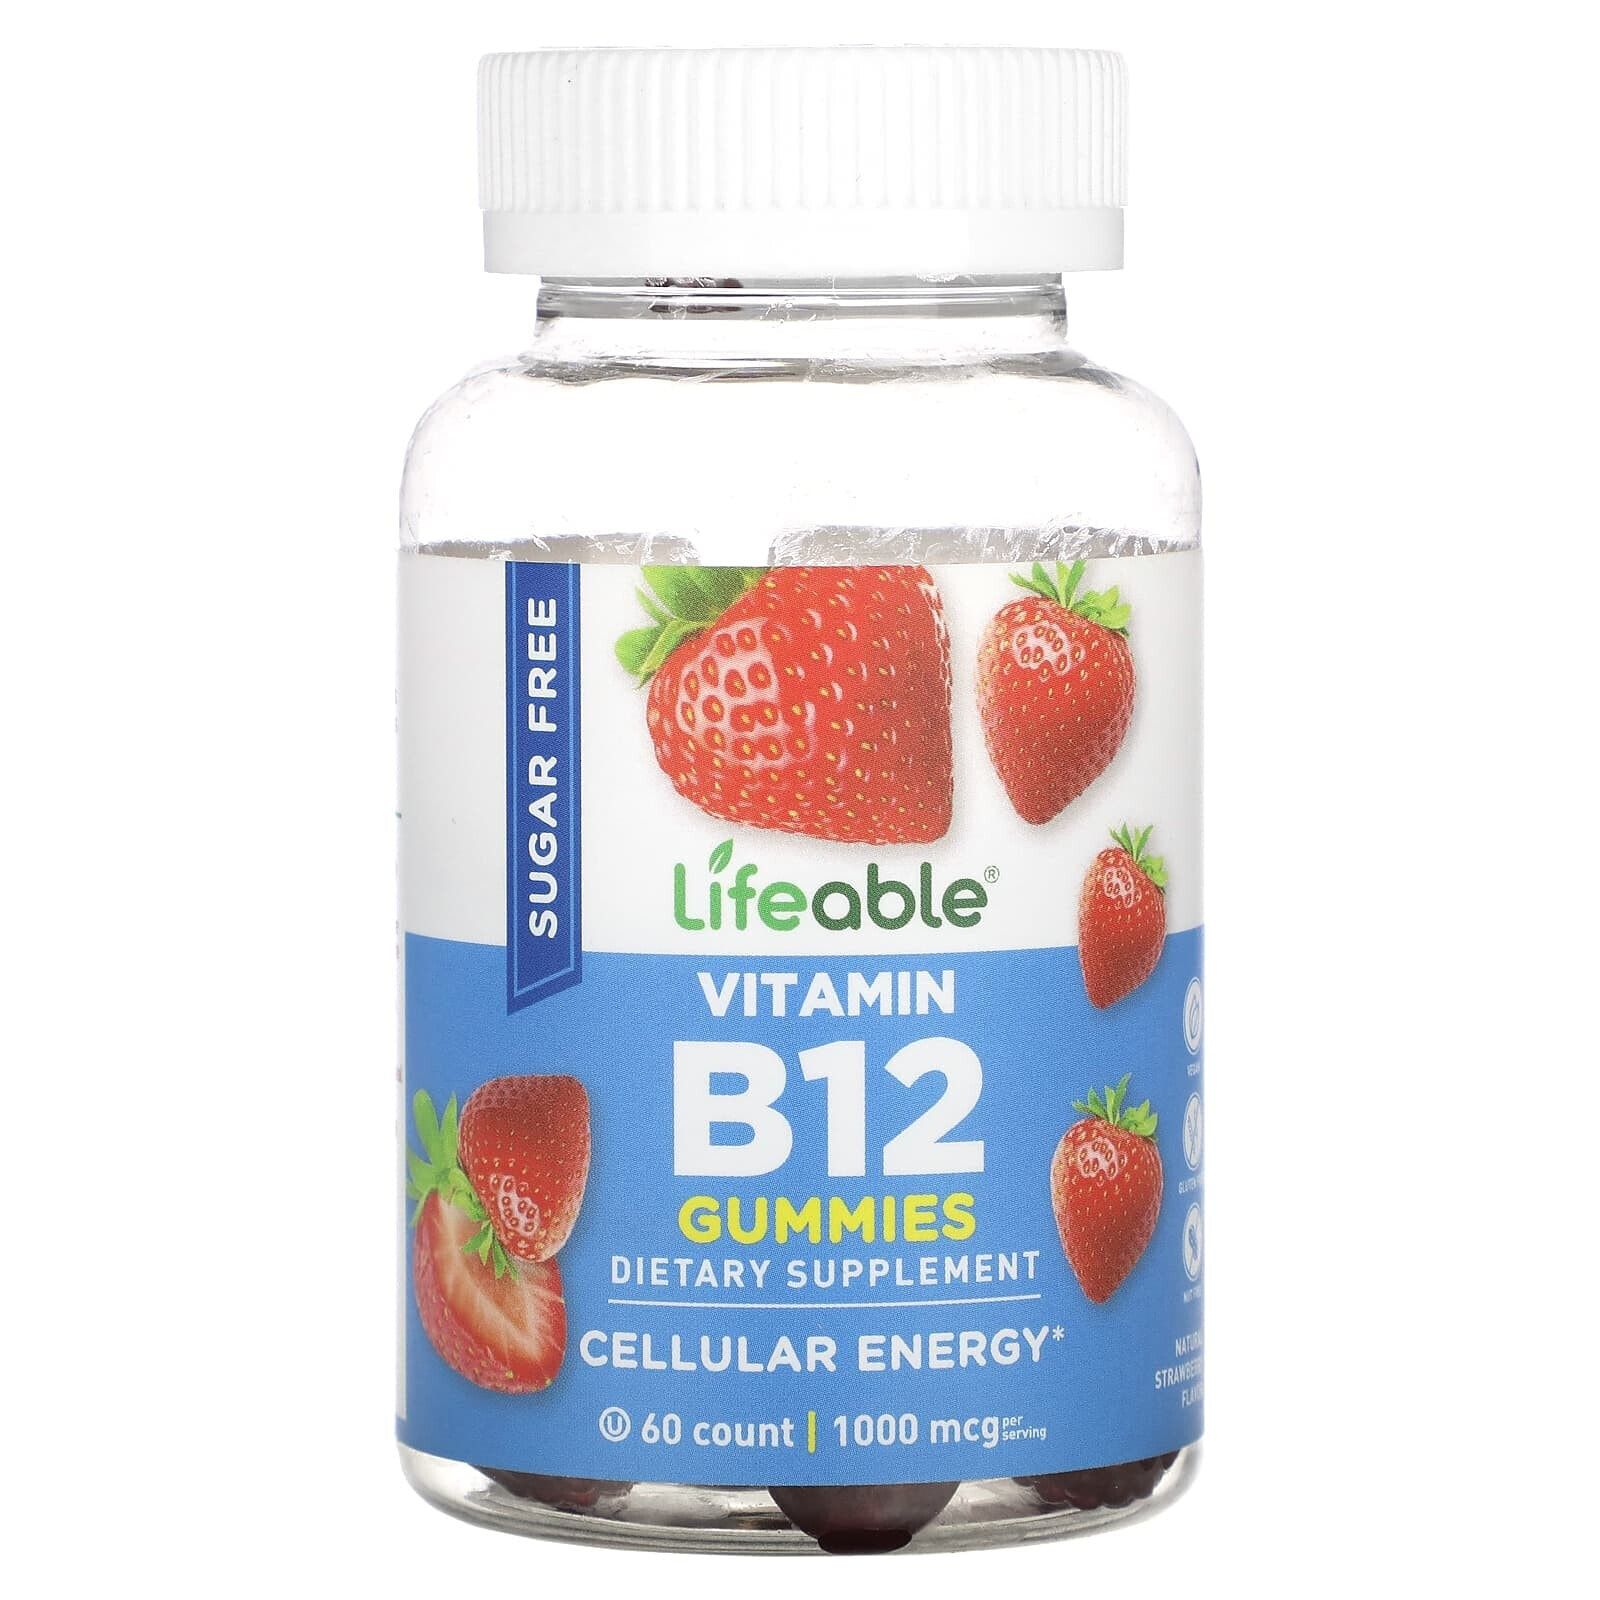 Vitamin B12 Gummies, Sugar Free, Natural Strawberry, 1,000 mcg, 60 Gummies (500 mcg per Gummy)